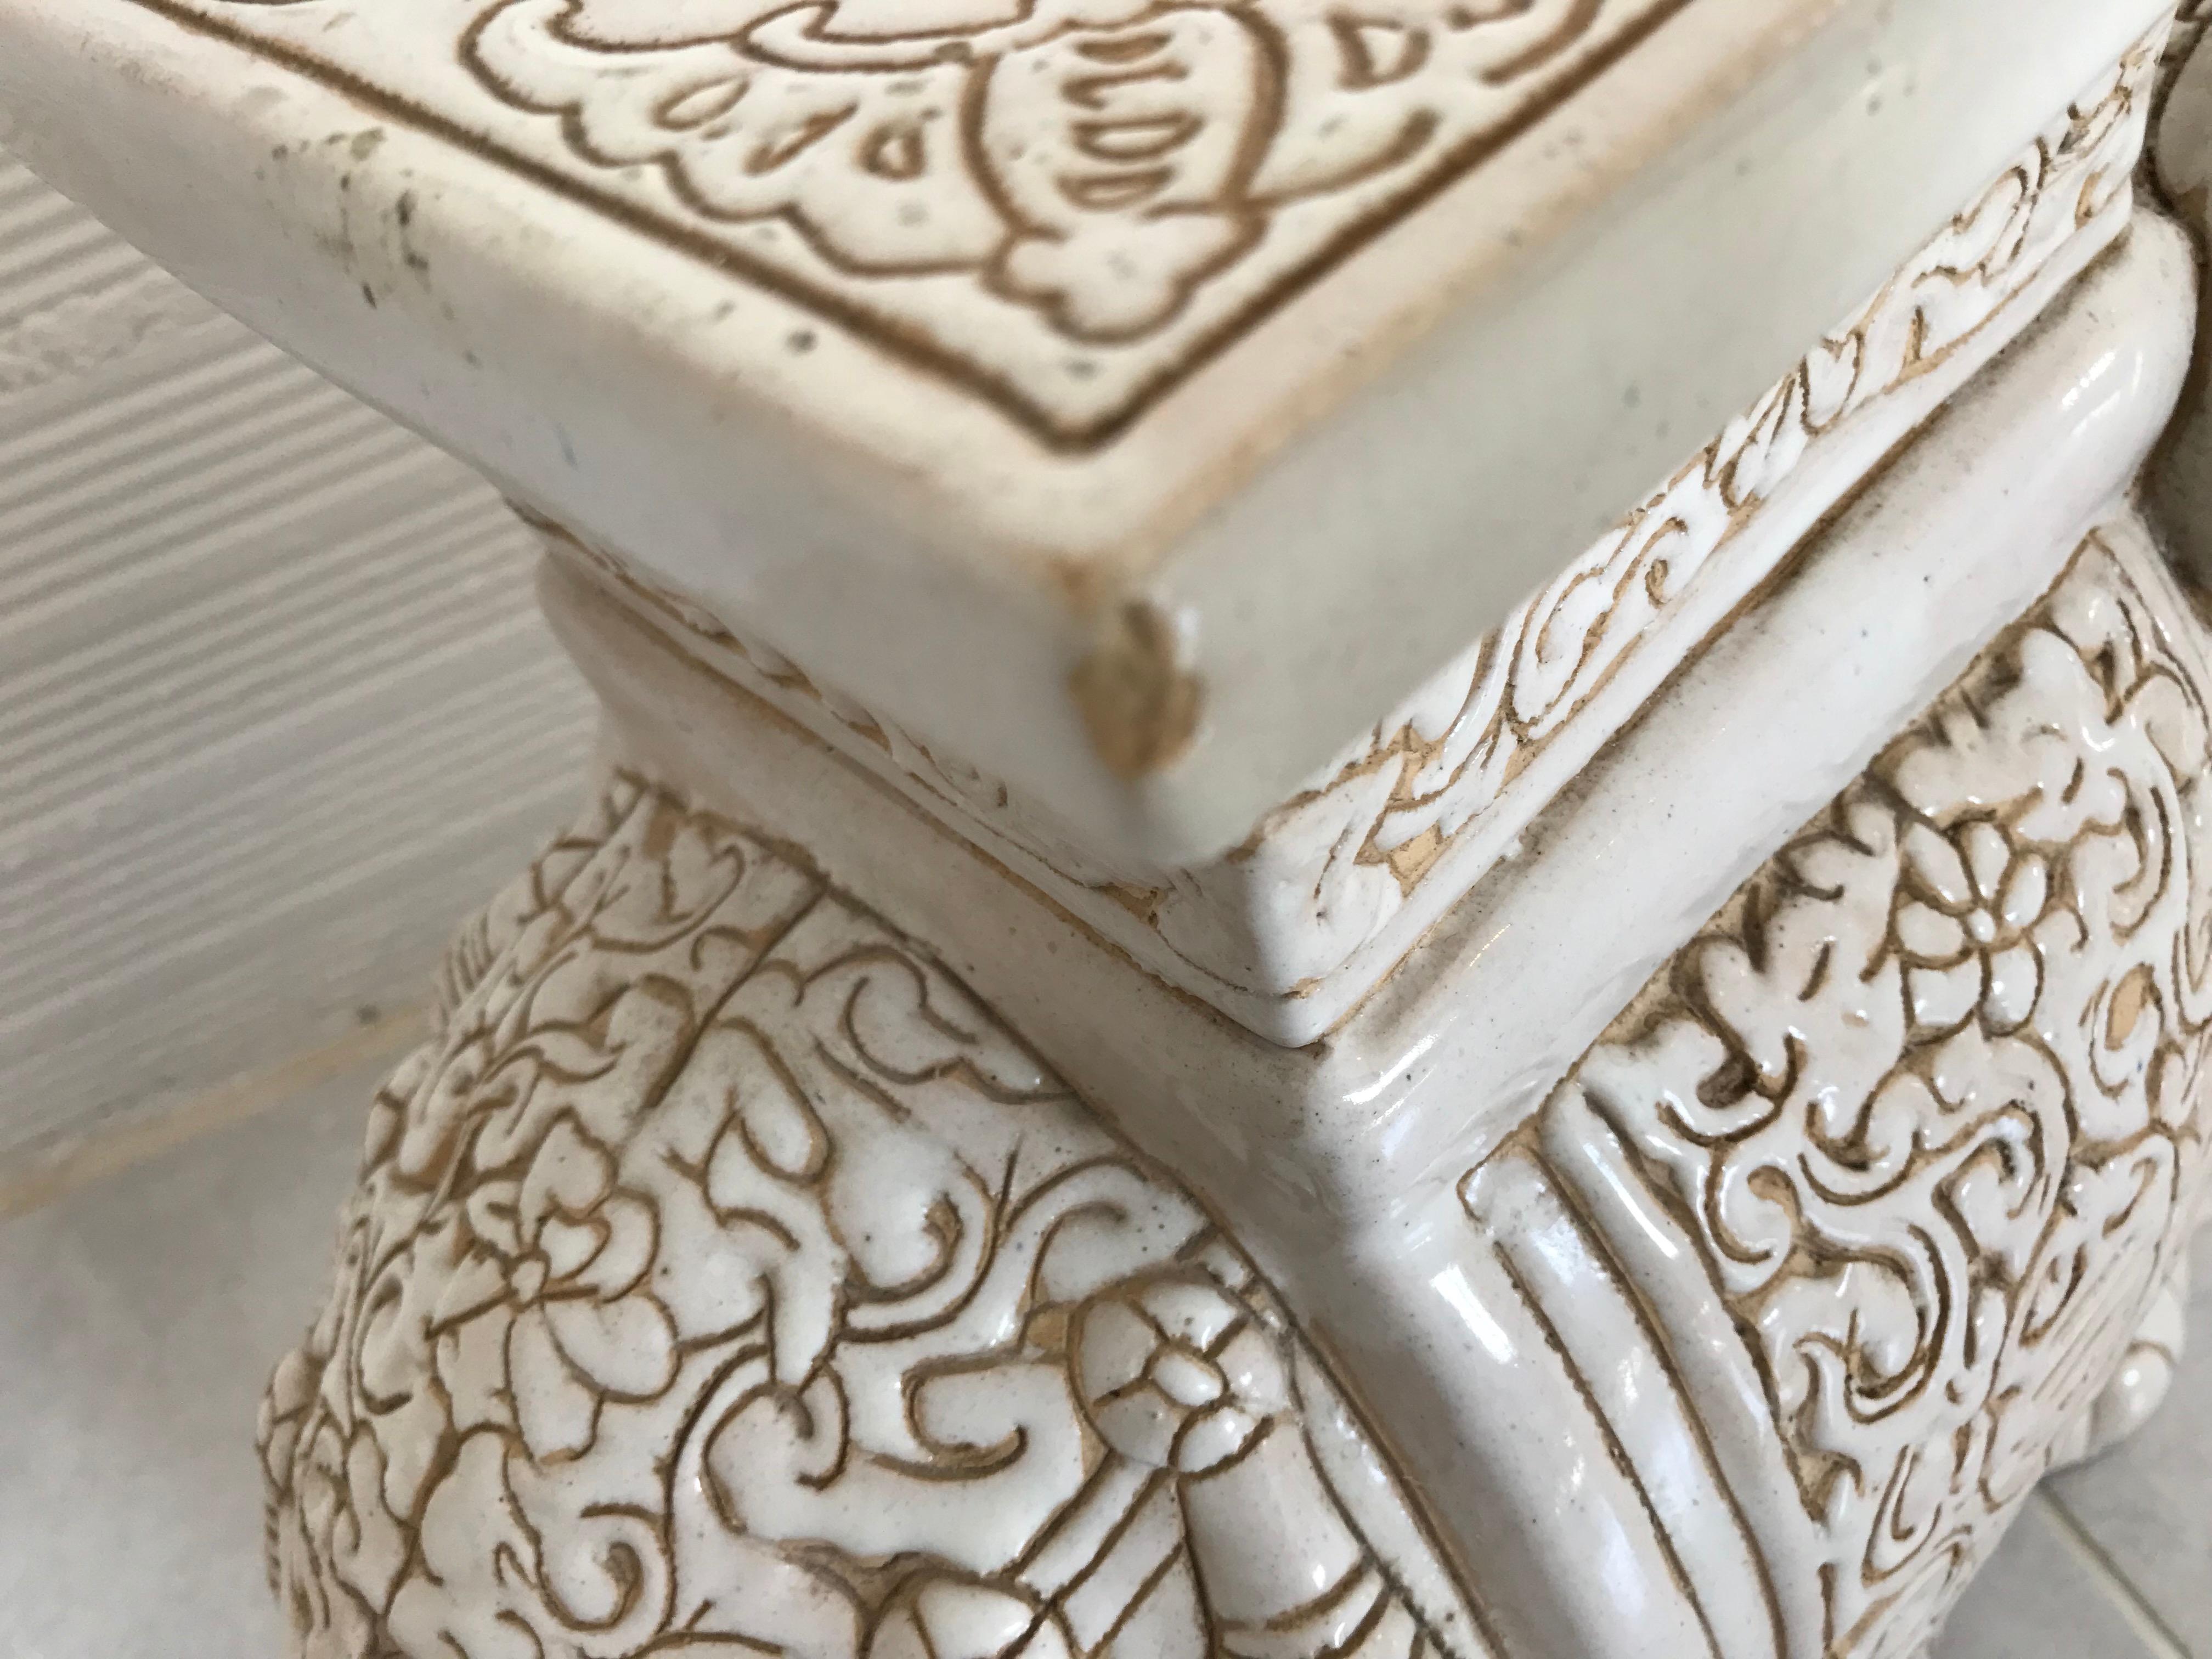 Glazed White Midcentury Ceramic Elephant Side Table, or Planter